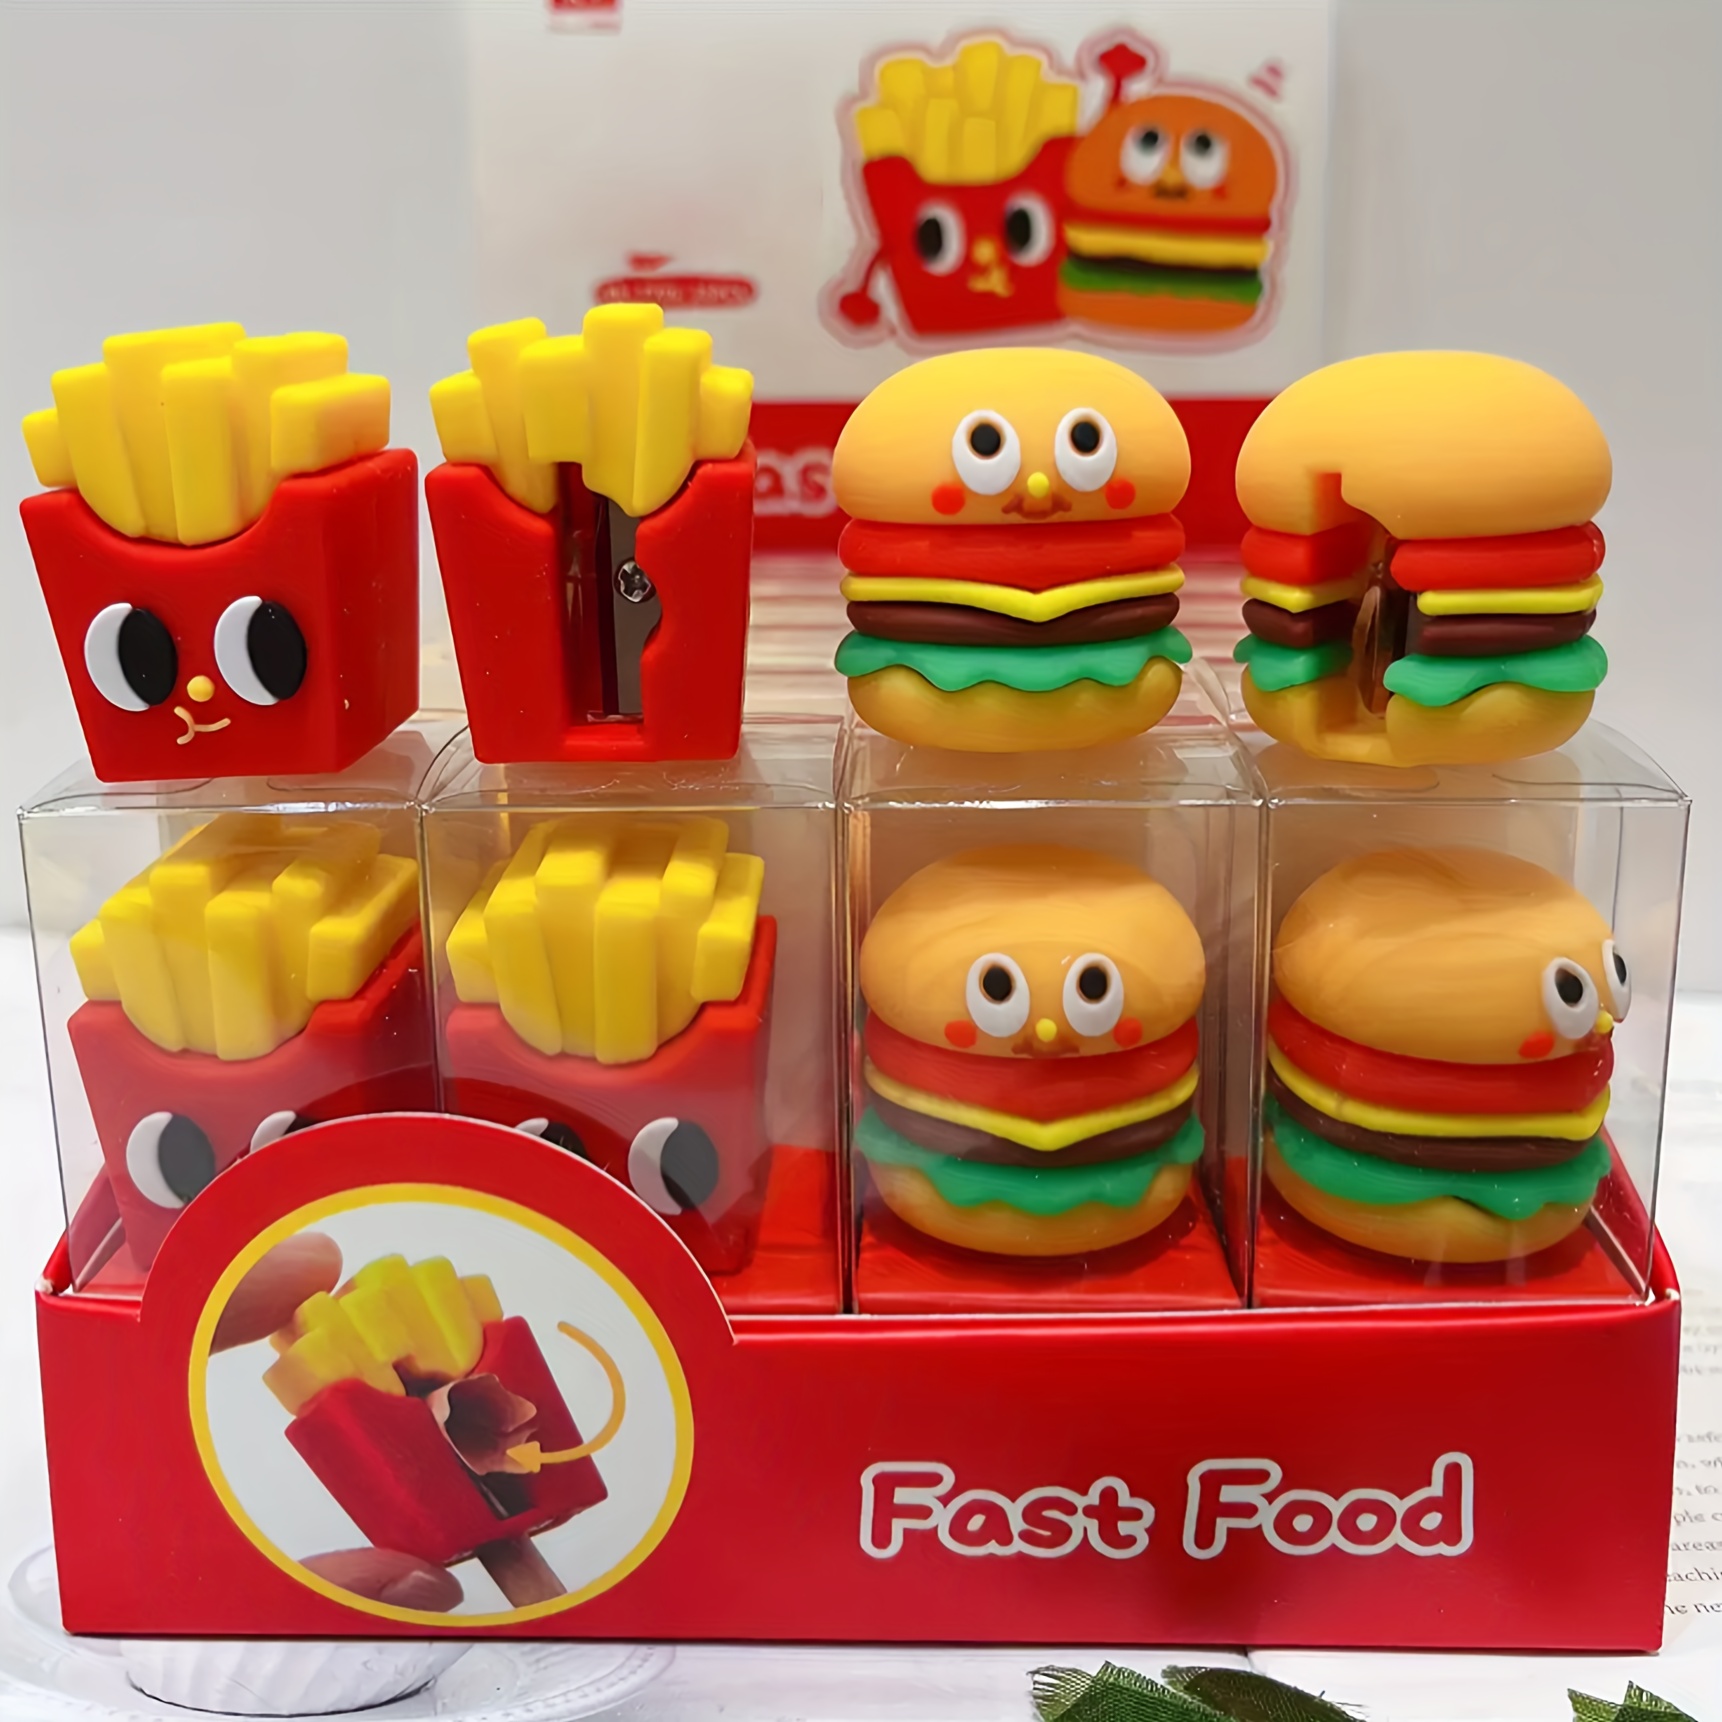 Burger Sticker - Temu